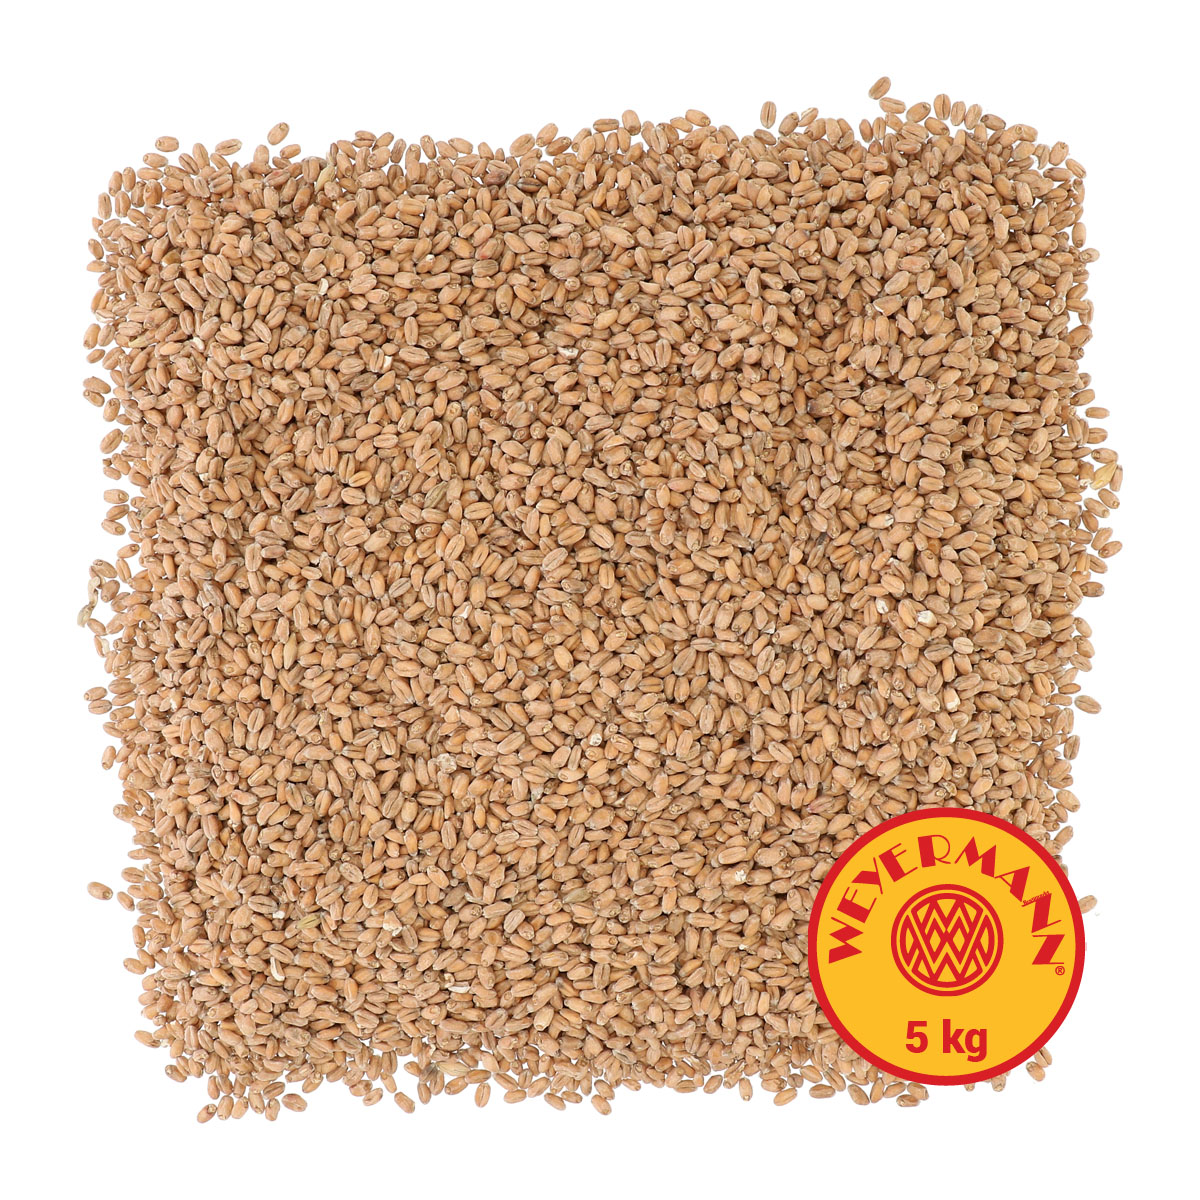 Weyermann® Pale Wheat 5 kg